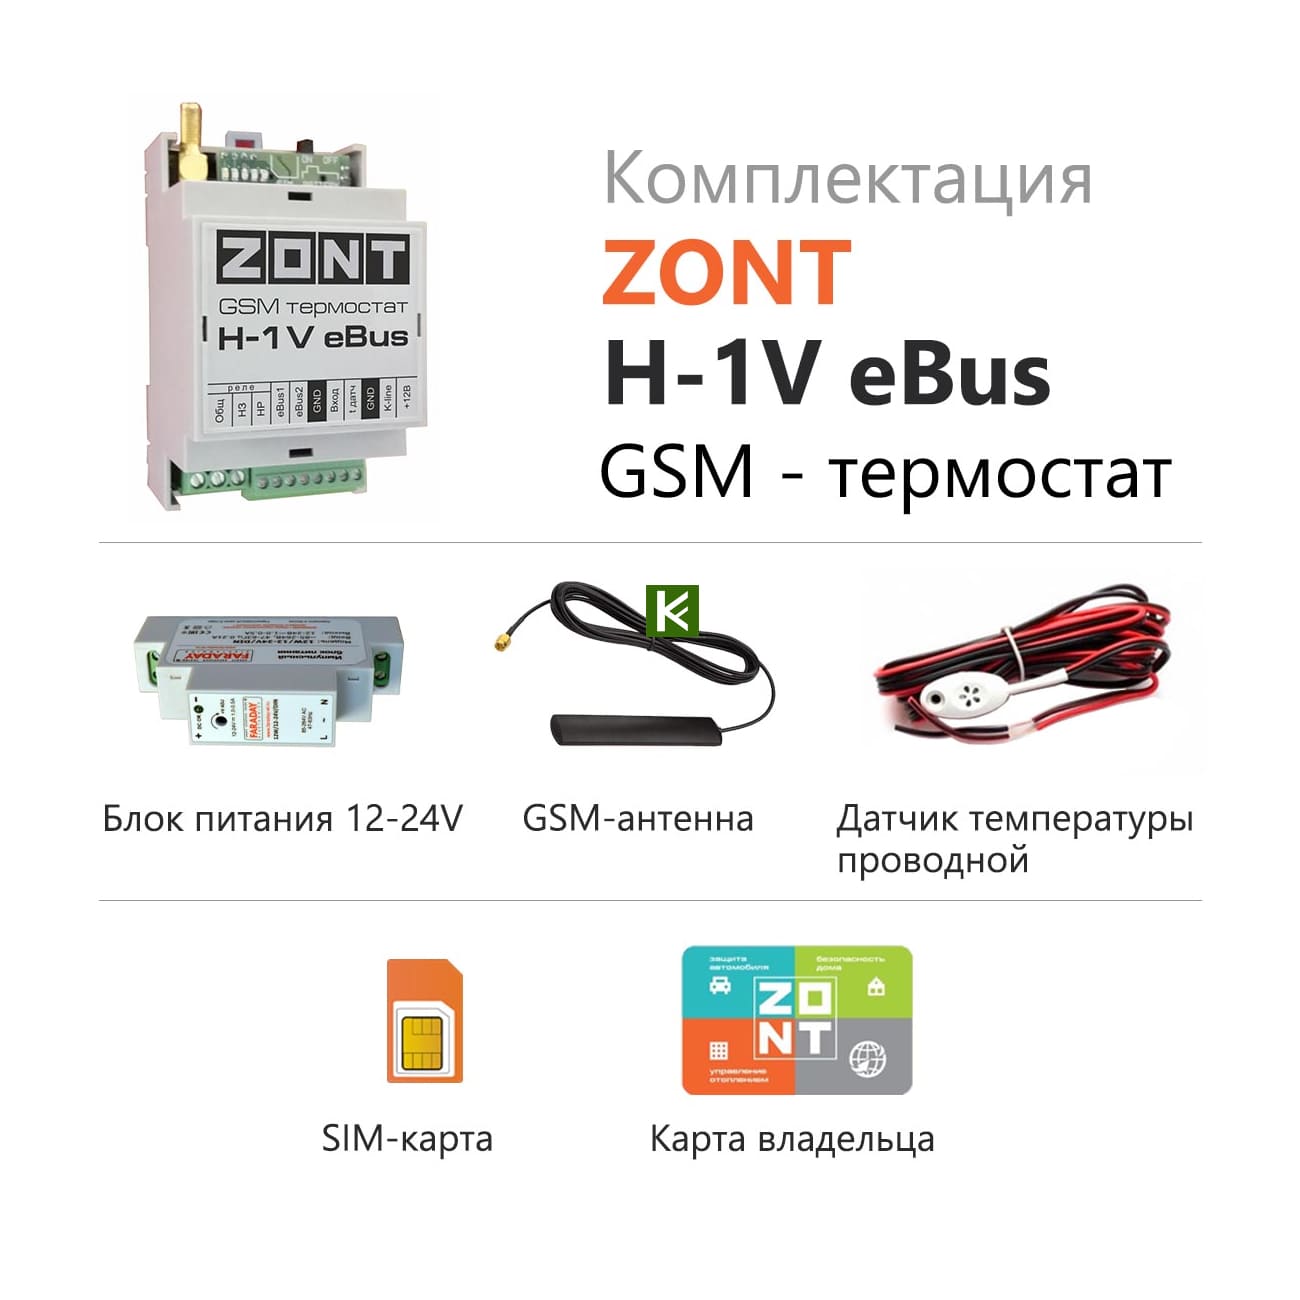 Zont 1v 02. Zont-h1v EBUS GSM-термостат. GSM-термостат Zont h-1. GSM-термостат Zont h-1v. GSM термостат Zont h-1v e-Bus.